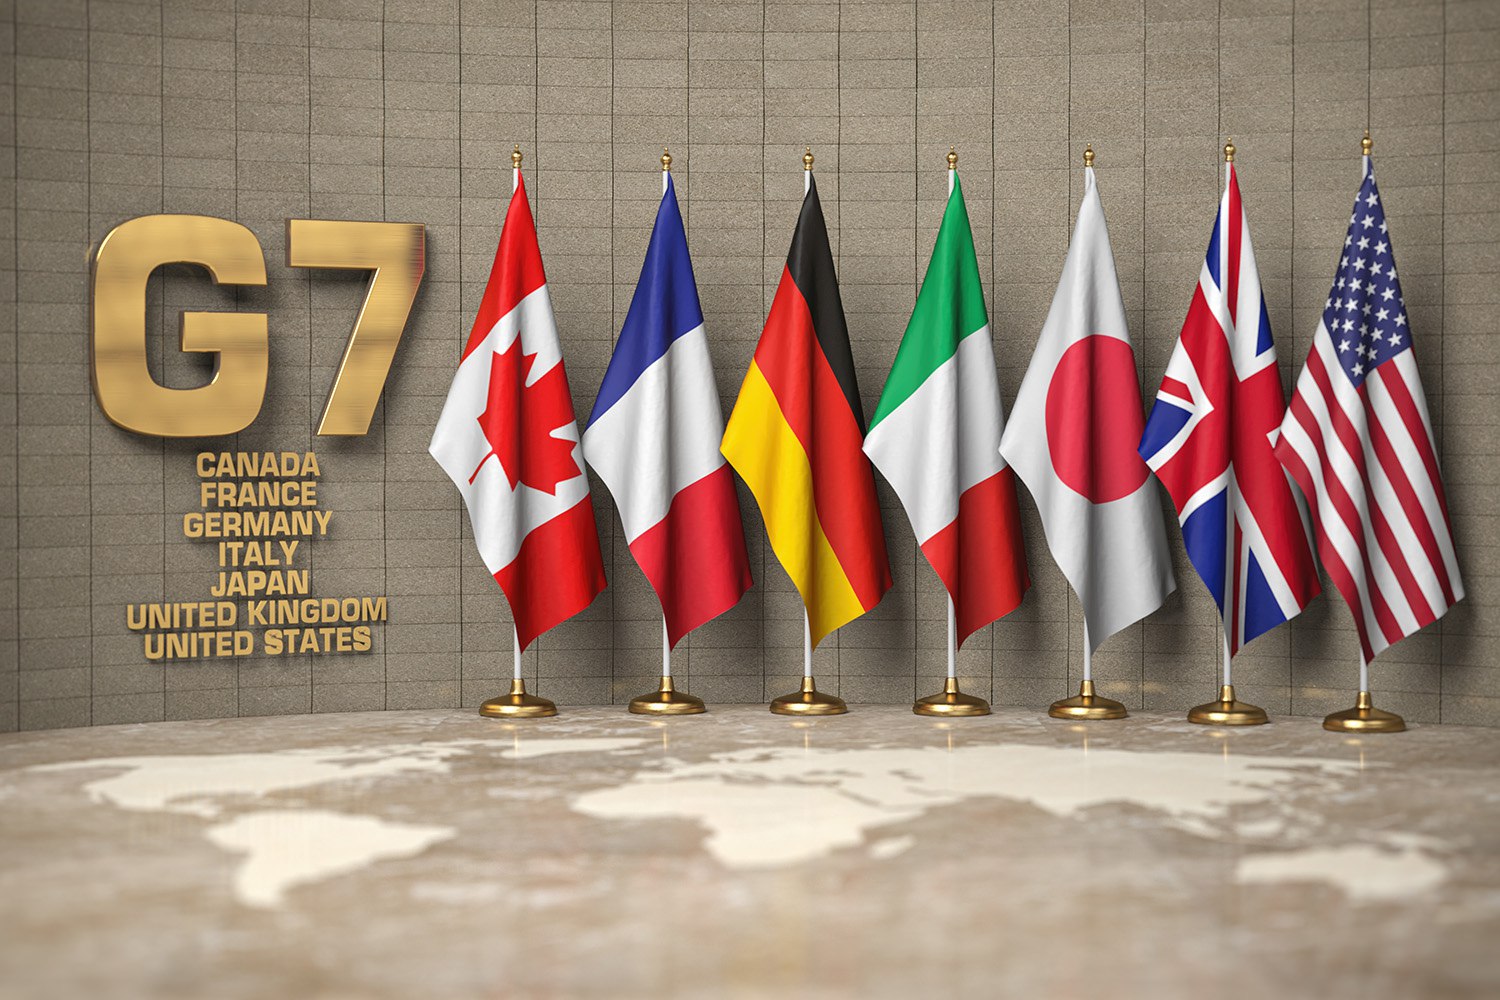 Οι έξι λαβωμένοι ηγέτες και η… πανίσχυρη Μελόνι – Ανοίγει η αυλαία της συνόδου των G7 στην Ιταλία